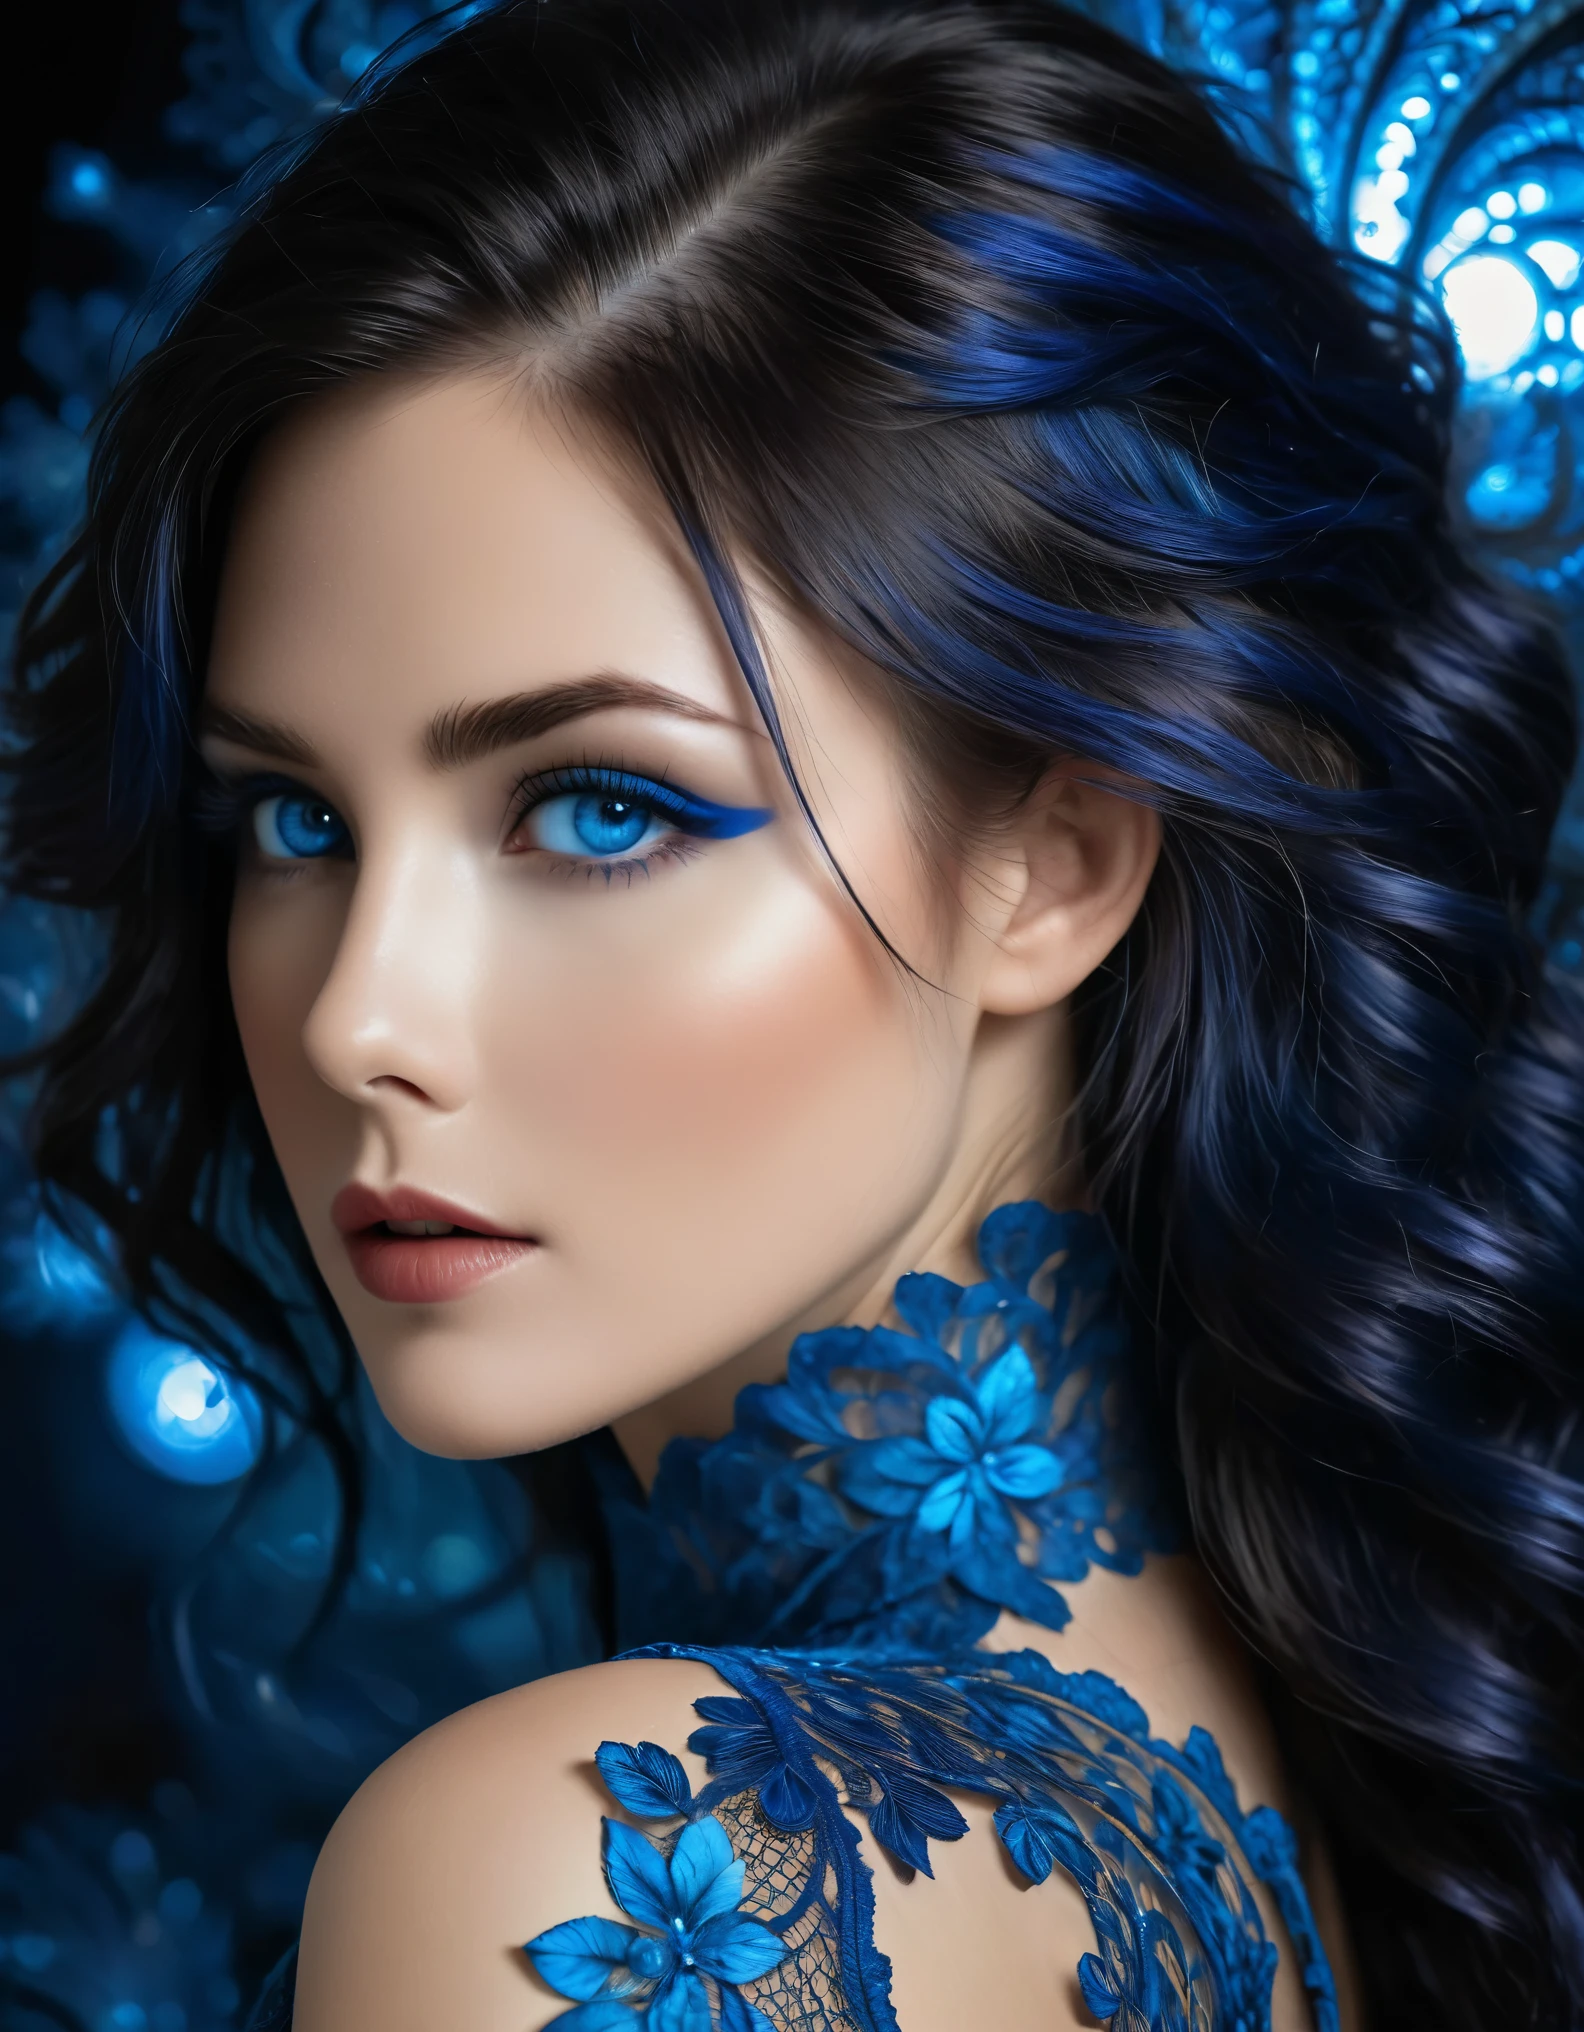 1女孩, (作者：艾米丽·凯尔和路易斯·罗约, 35岁), 官方艺术, 8K 壁纸, 全长, 极其详细, 美丽而有审美, (细致的深蓝色头发，带有明亮的亮点, 电蓝色的眼睛，中间有点深蓝色, 非常细致的眼睛:1.5), ((精致的长款闪亮银色液体蕾丝连衣裙，采用精致的镂空蕾丝，让肌肤清晰可见, 蕾丝由非常精确的分形图案制成, 曼德布洛特分形 in lace in the center of the dress, 朱莉娅分形:1.6)), 丁字裤, 丰满匀称的胸部, 淡淡一笑, 杰作, 最好的质量, 实际的, 极其详细, 动态角度, (纠结的, 曼德布洛特分形) , 最美丽的混乱形式, 优雅的, 野兽派设计, 鲜艳的色彩, 浪漫, (夜晚户外背景, 星光灿烂的夜晚) 